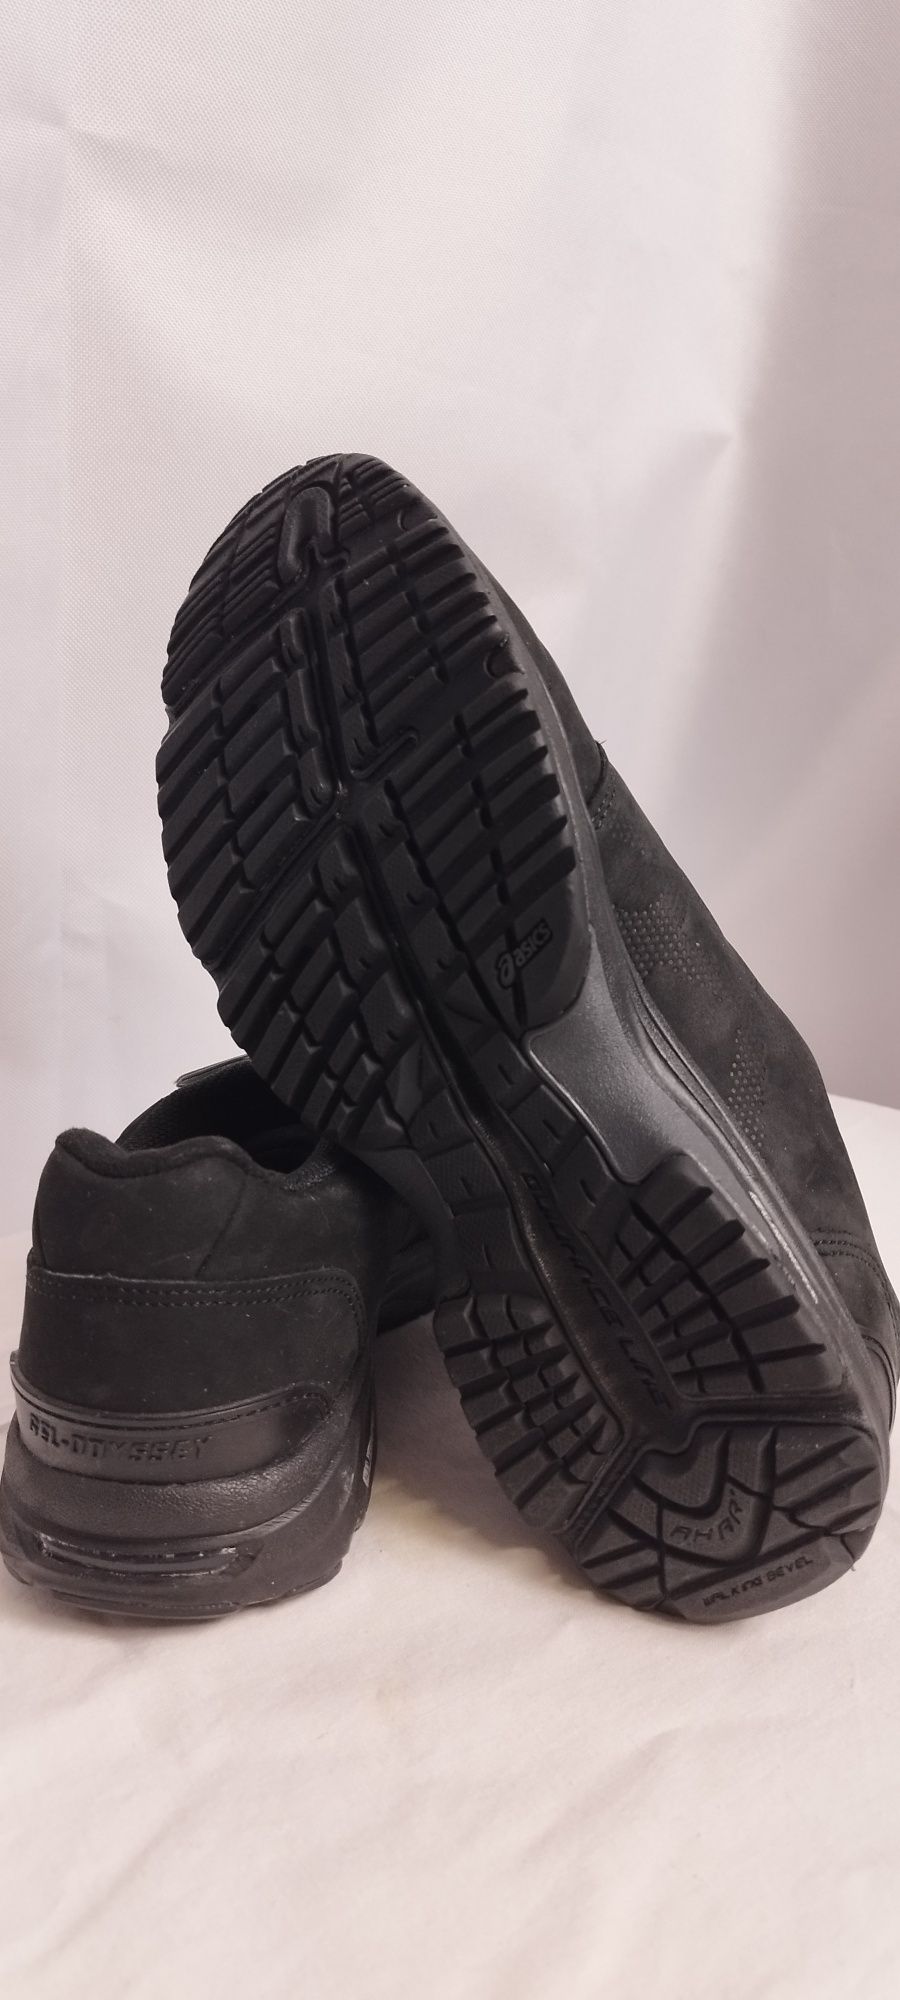 Nowe damskie buty Asics Gel-odyssey rozmiar 37 czarne